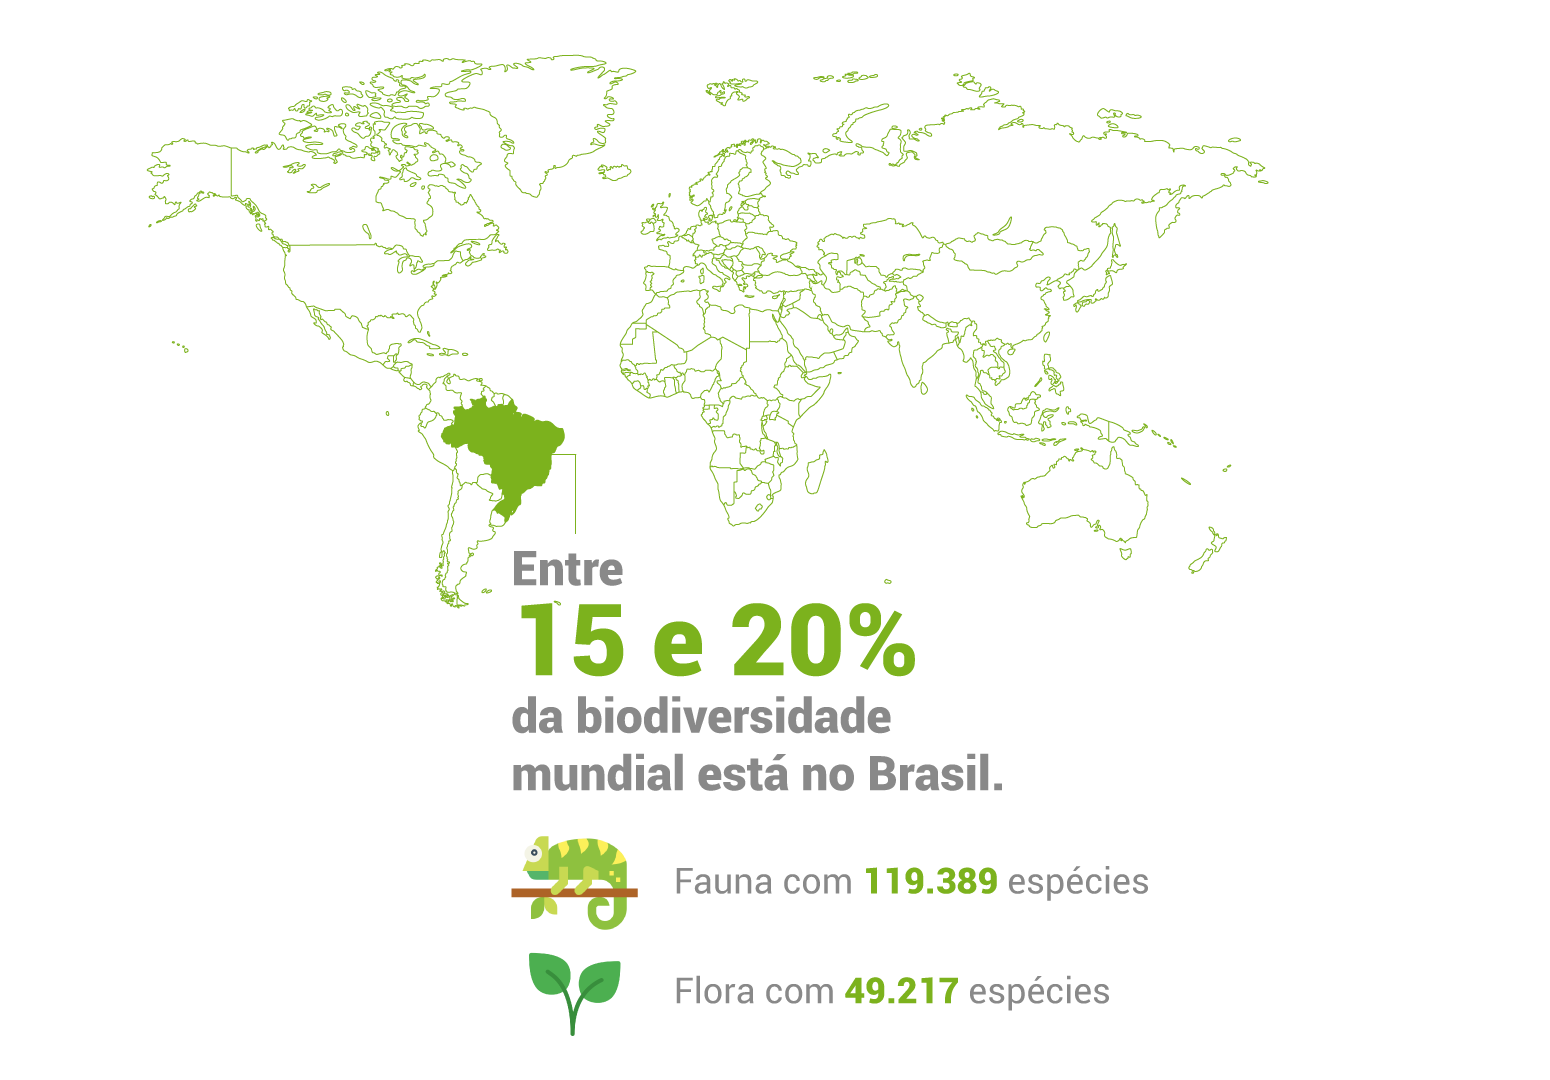 Entre 15 e 20% da diversidade biológica mundial está no Brasil